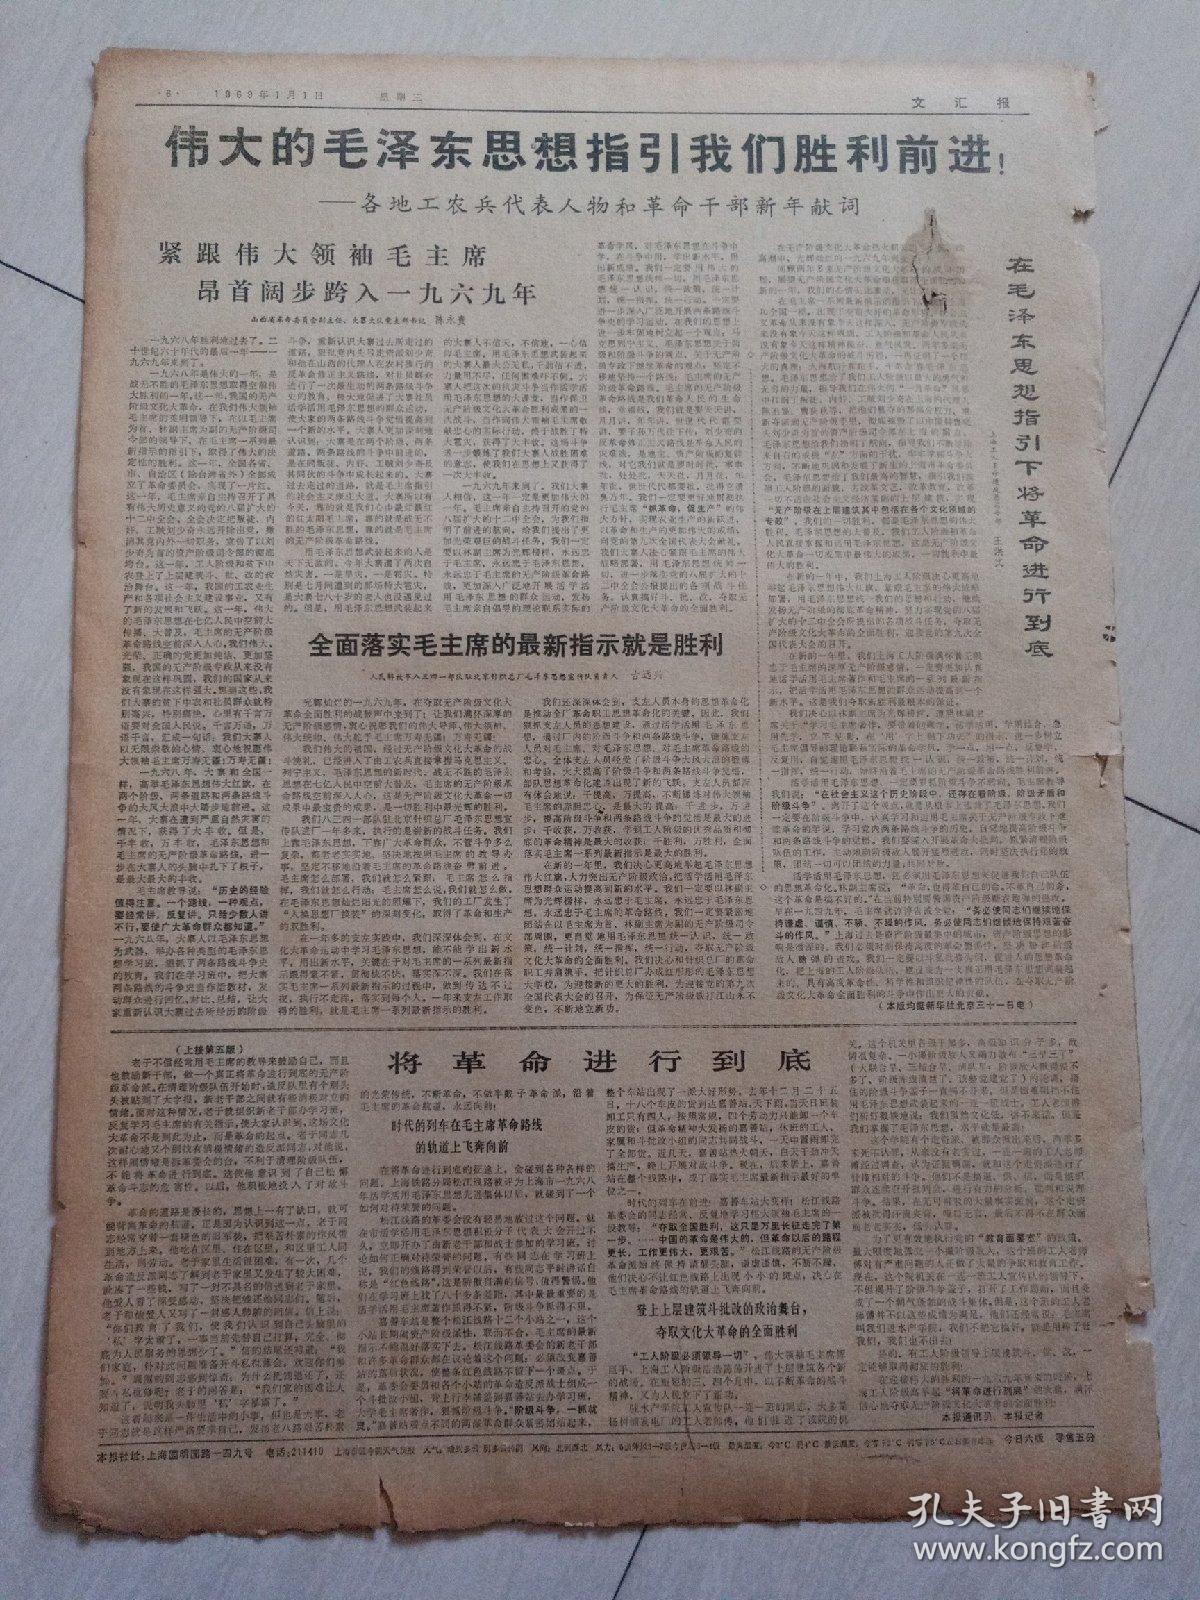 报纸 文汇报1969年1月1日(4开六版)伟大的毛泽东思想指引我们胜利前进;全面落实毛主席的最新指示就是胜利;热烈祝贺我国新的氢弹试验成功;用毛泽东思想统帅一切。